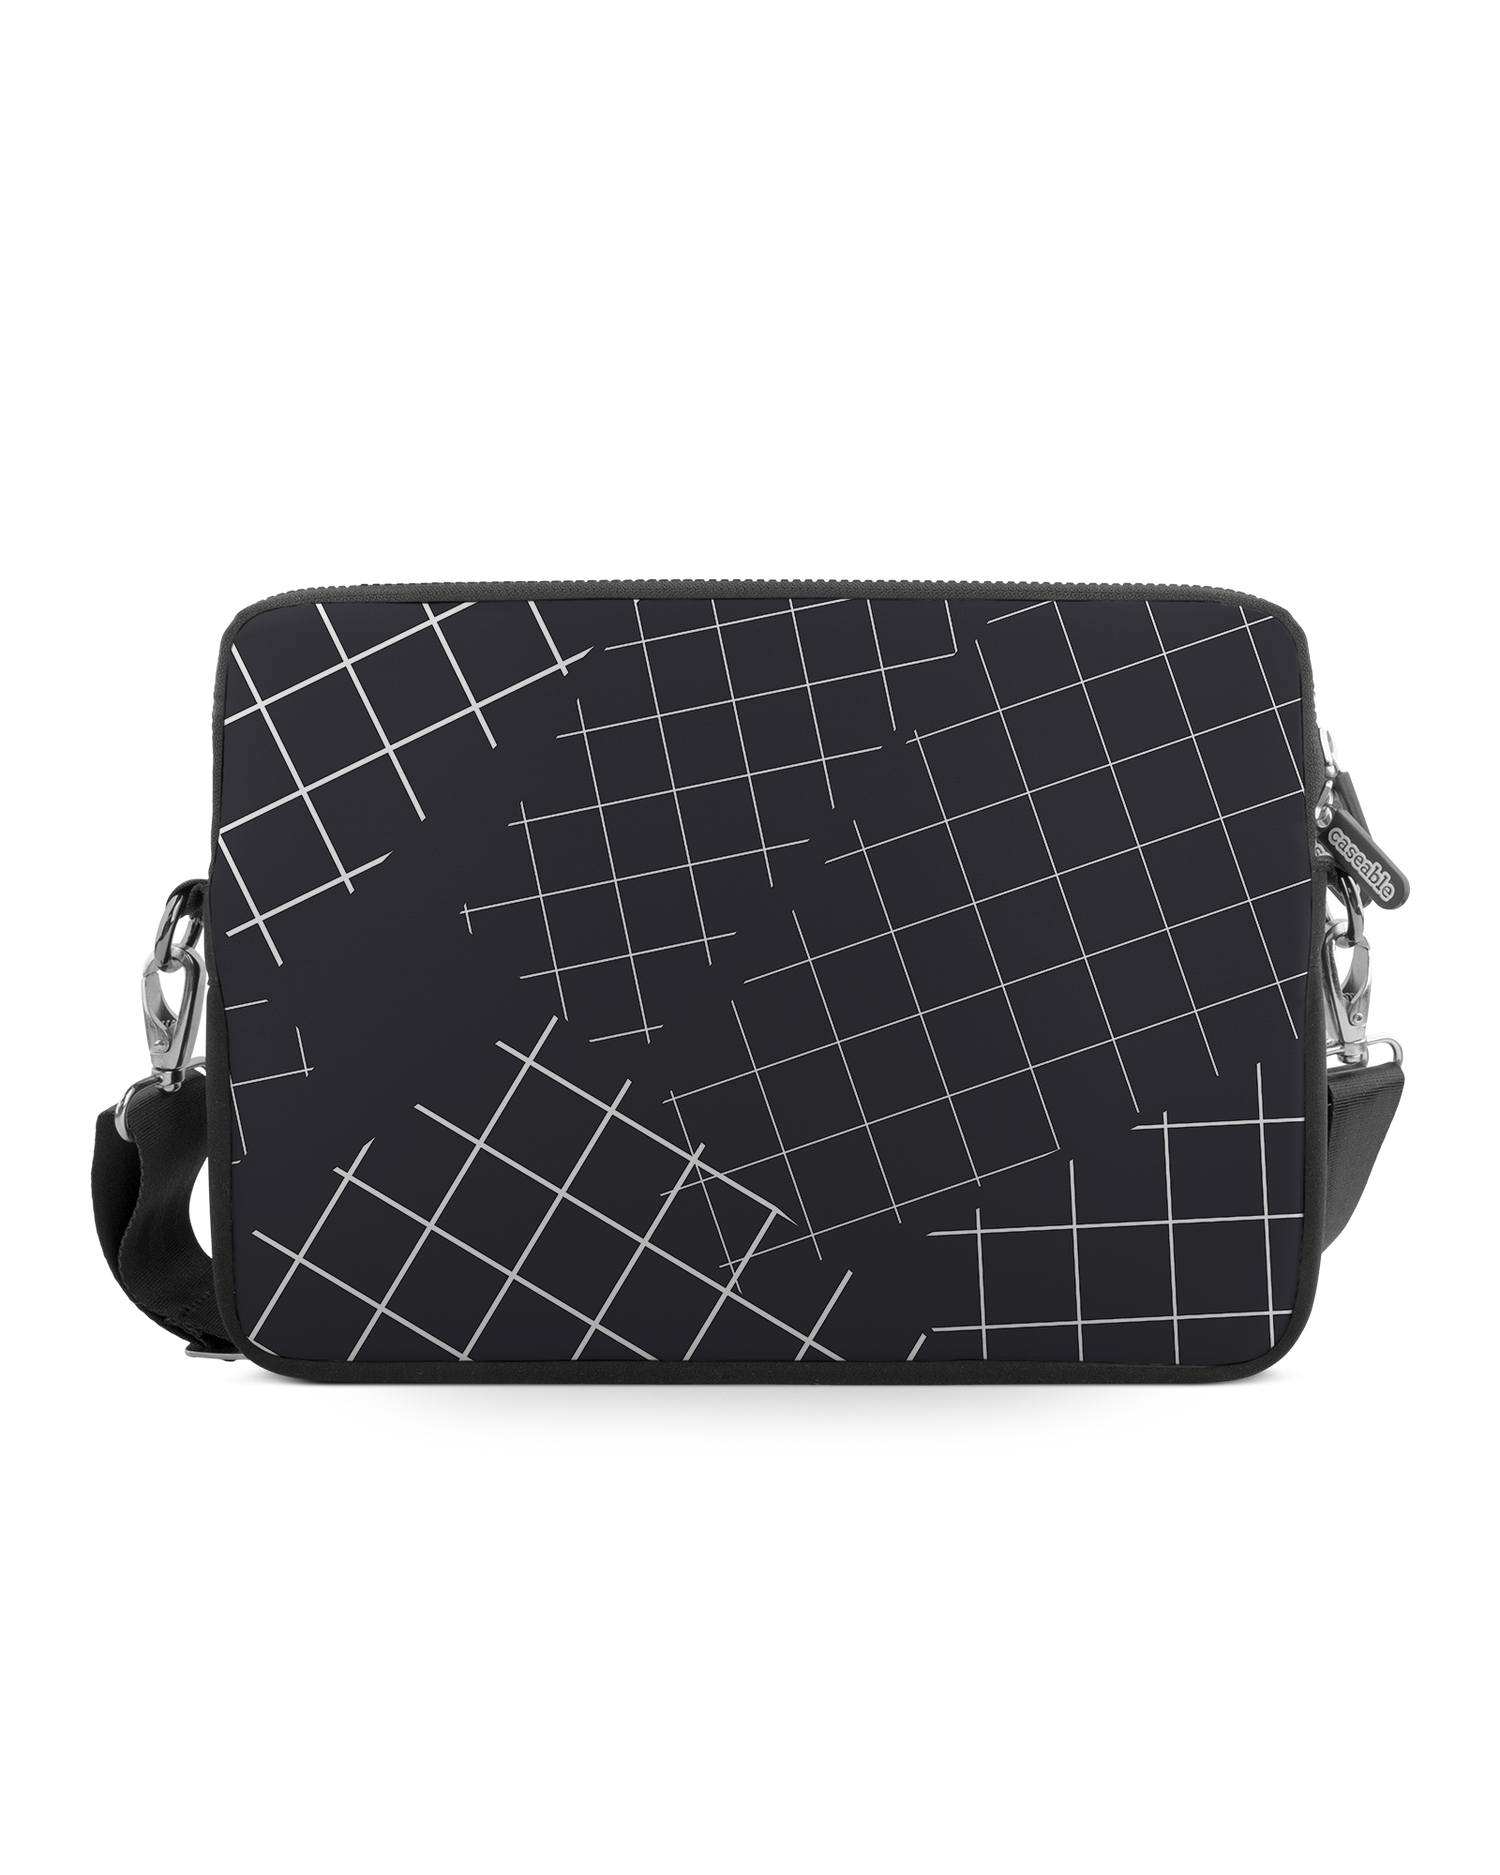 Grids Premium Laptop Bag 13-14 inch: Front View